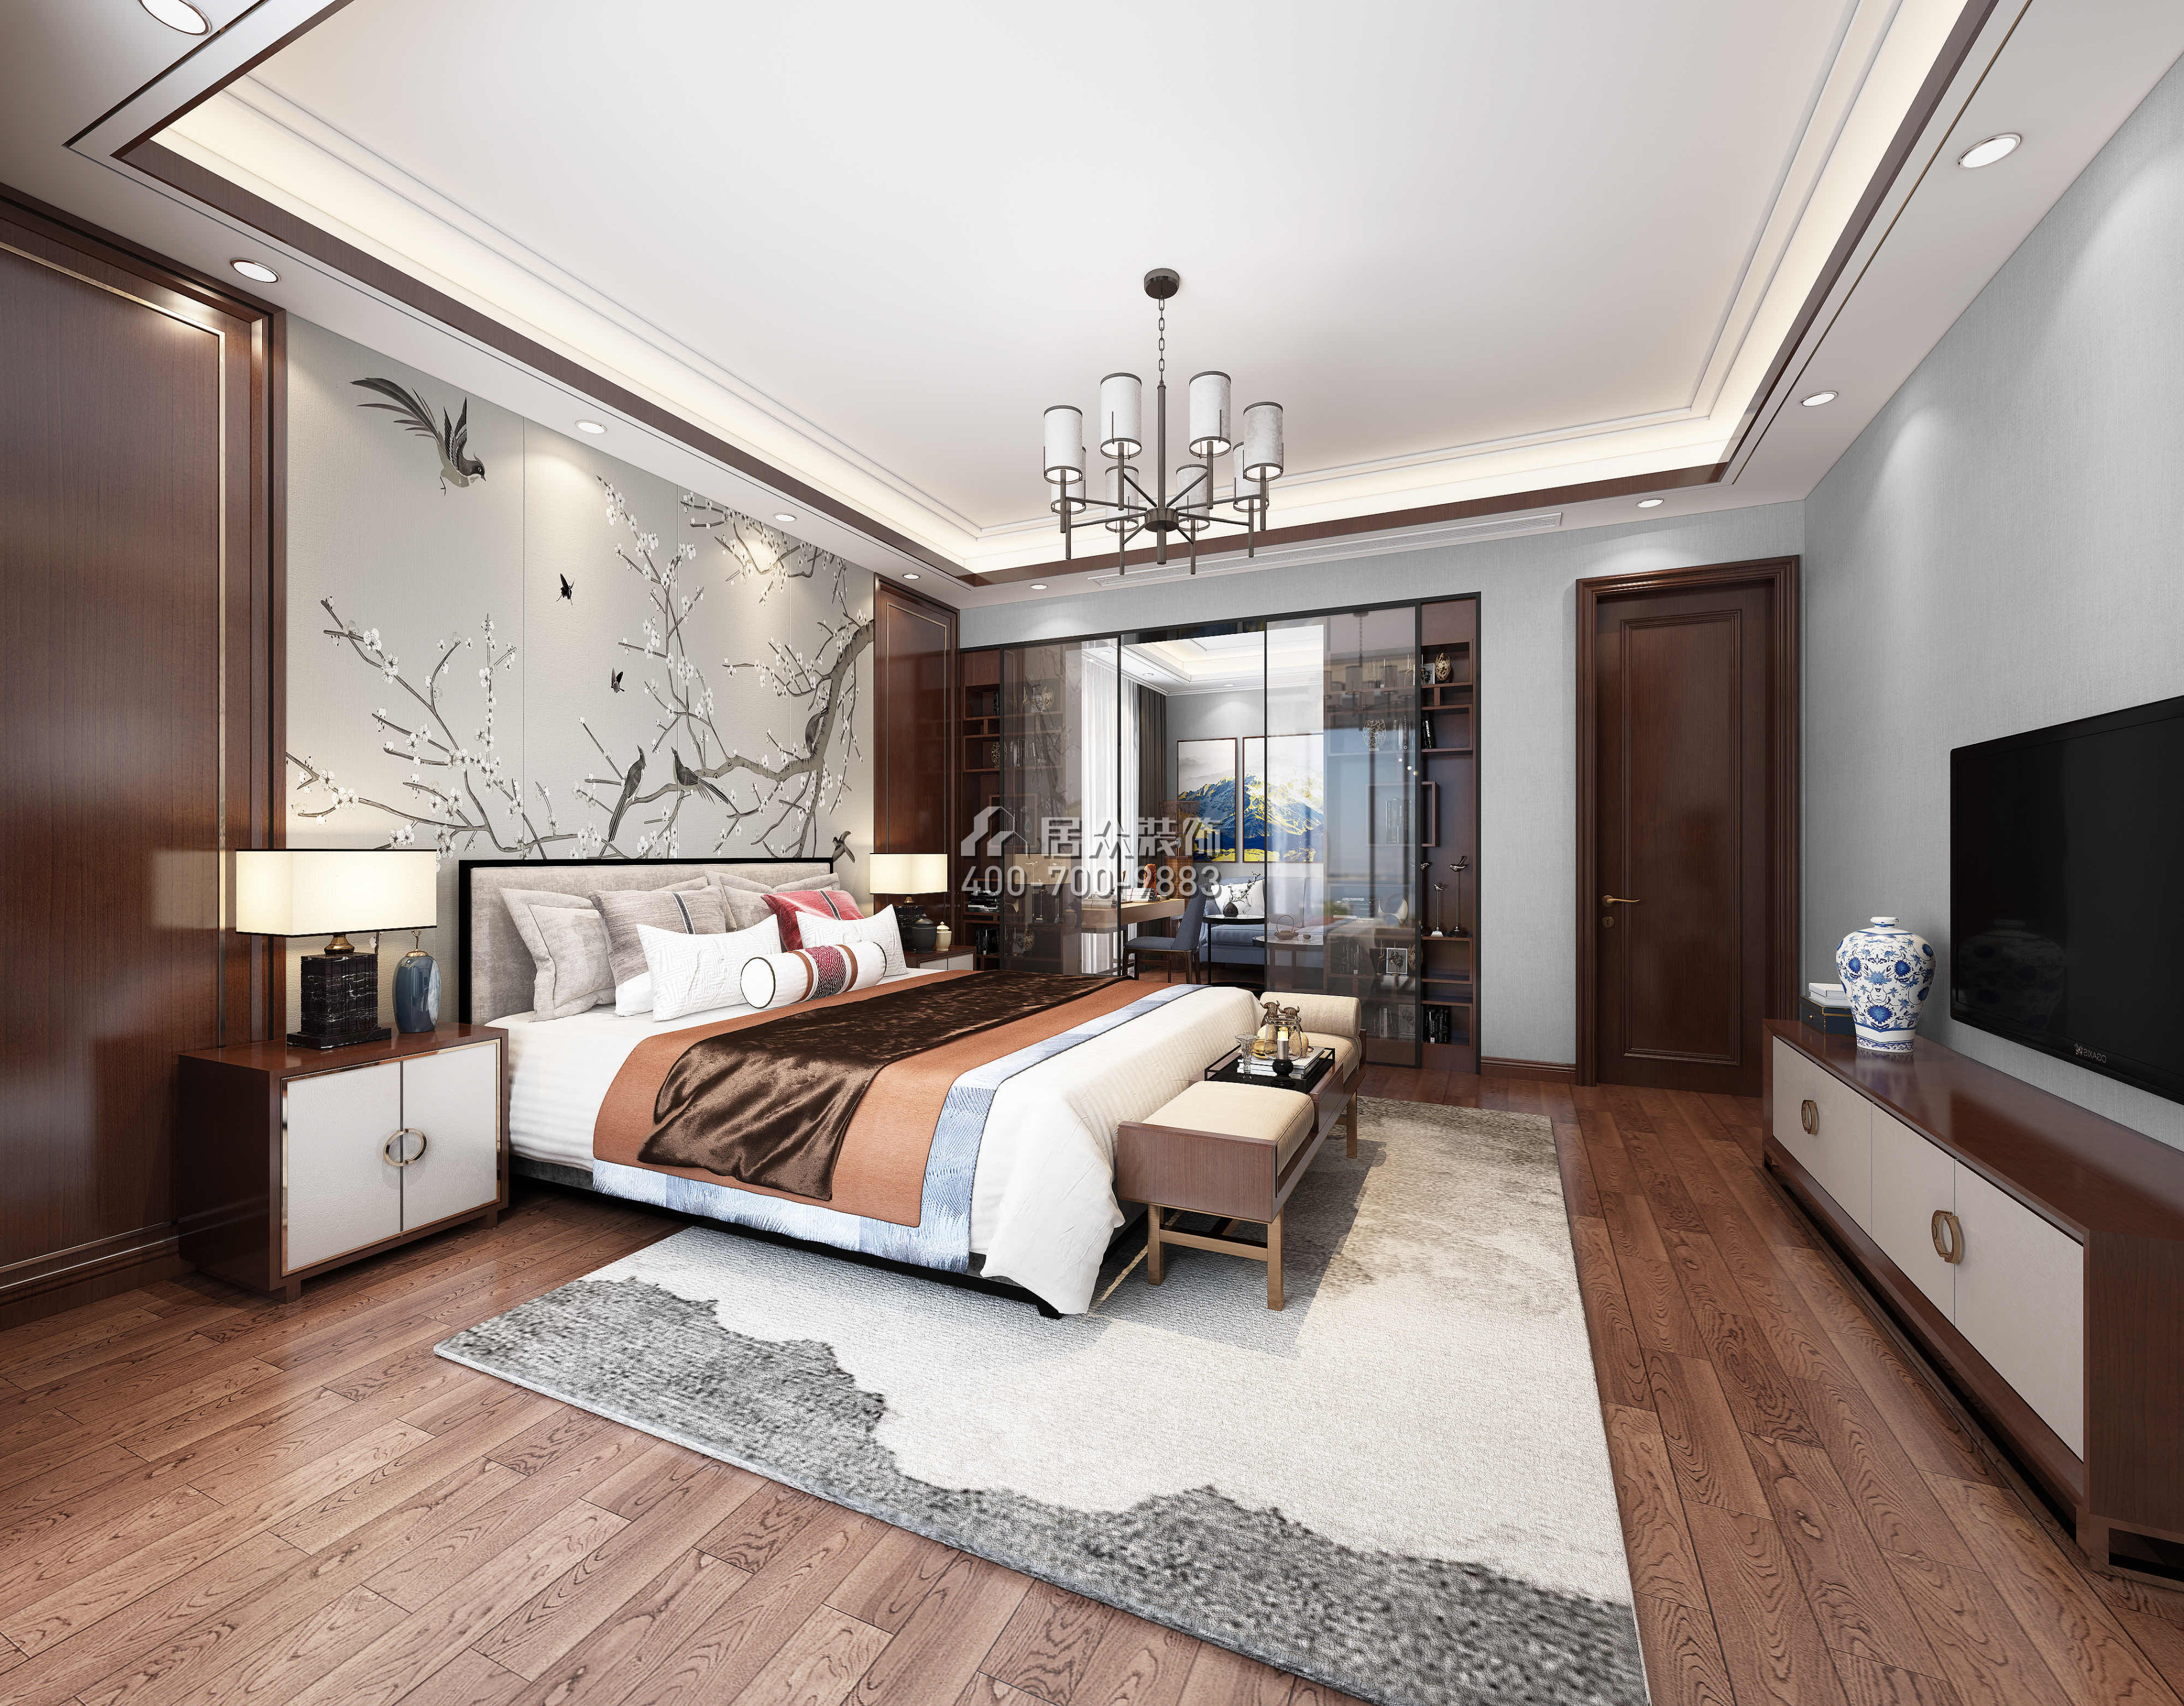 華發新城480平方米中式風格別墅戶型臥室裝修效果圖